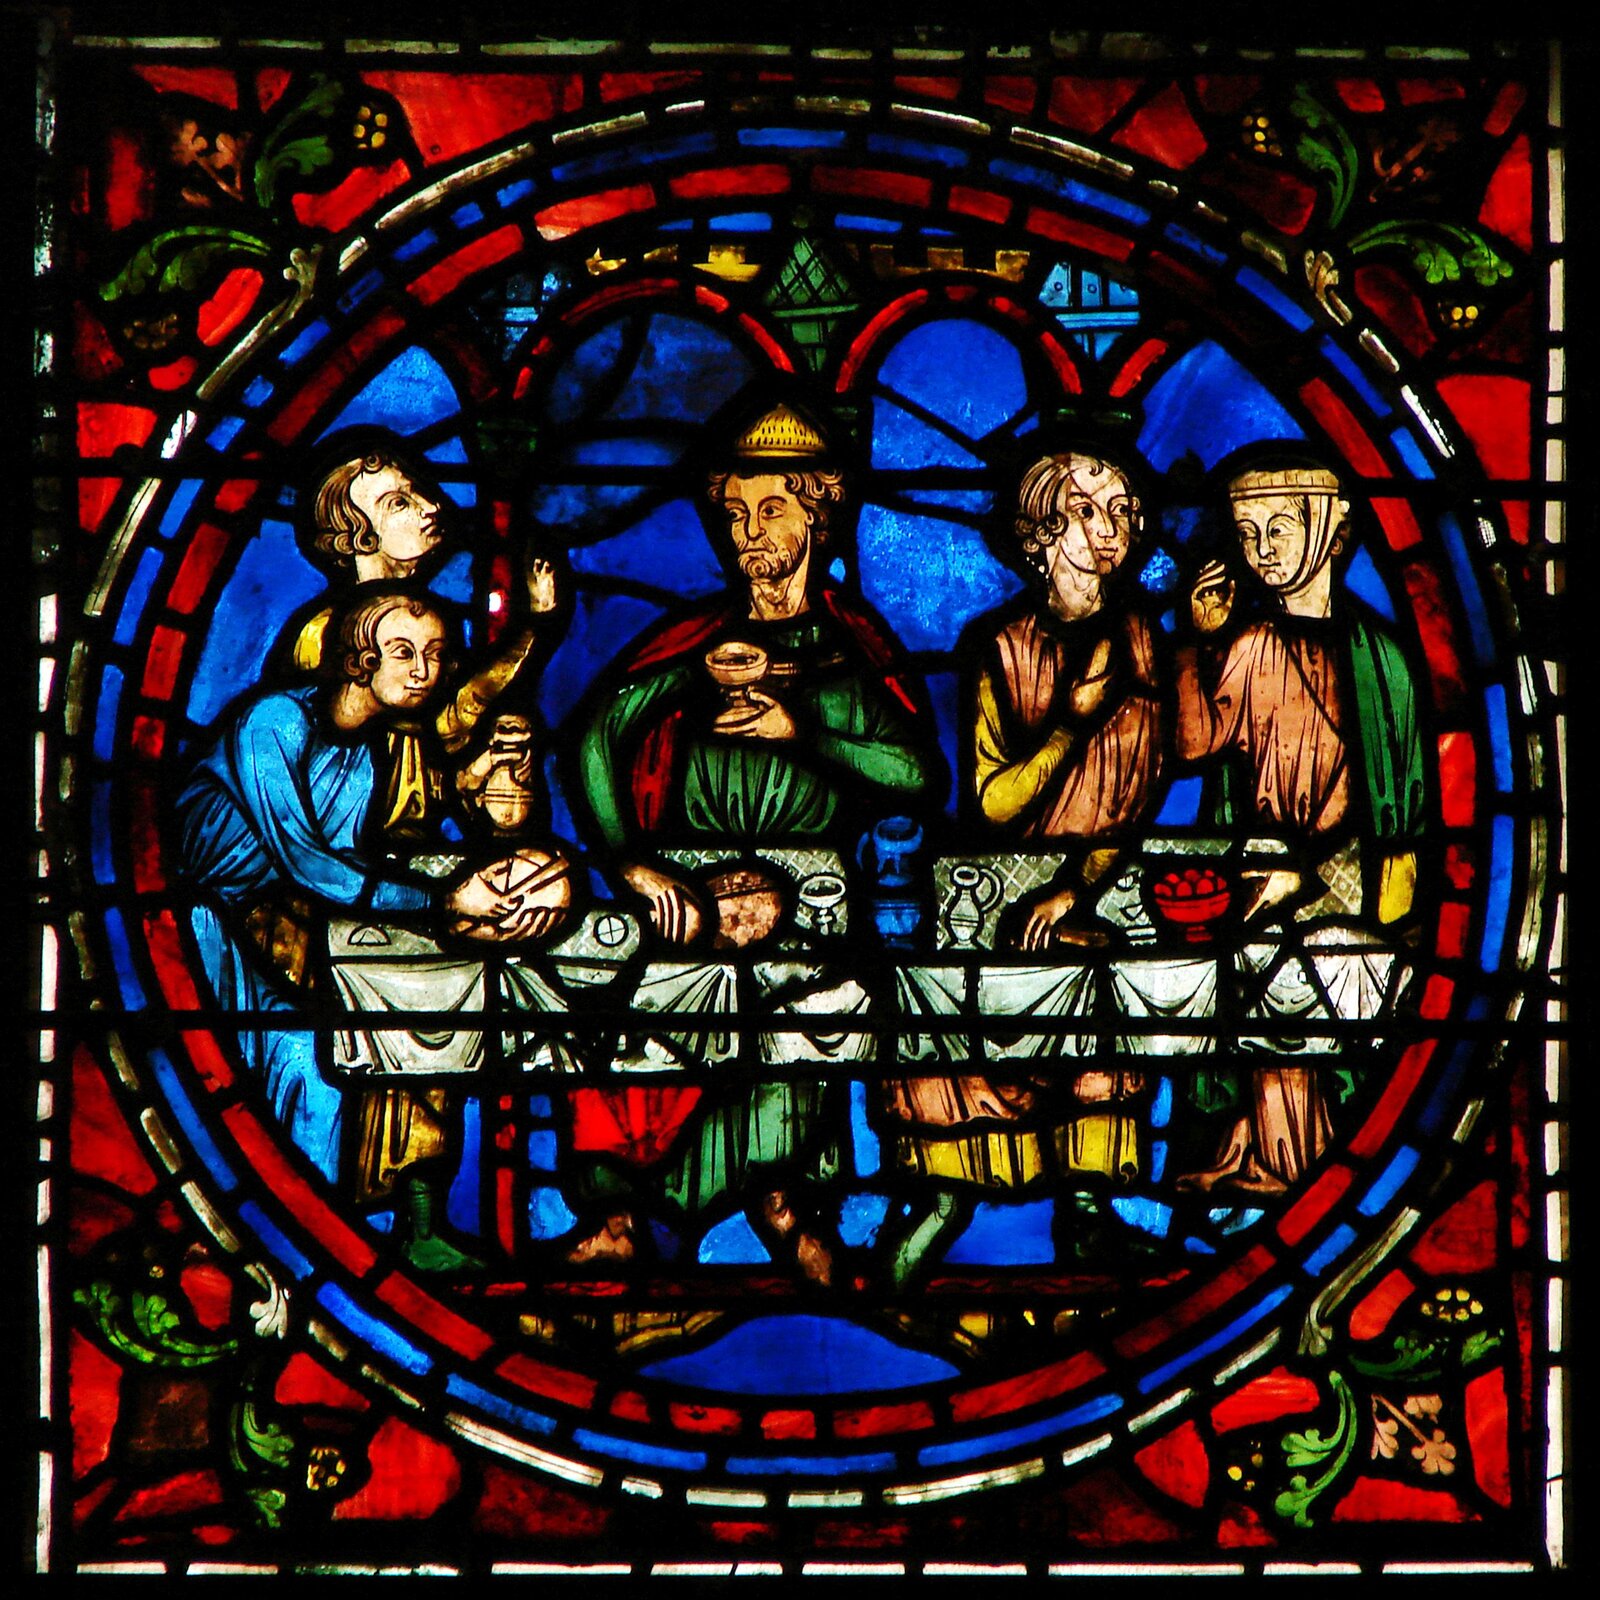 Zdjęcie przedstawia witraż z Katedry w Chartres z XIII wieku. Ukazuje Chrystusa i Apostołów, siedzących za stołem podczas Ostatniej Wieczerzy, przedstawionym w kole. Jezus trzyma kielich z winem. Po obu stronach znajdują się po dwie postacie. Tło jest niebieskie, a przestrzeń dookoła wypełniona jest czerwonymi szkiełkami. W narożnikach znajdują się motywy roślinne.